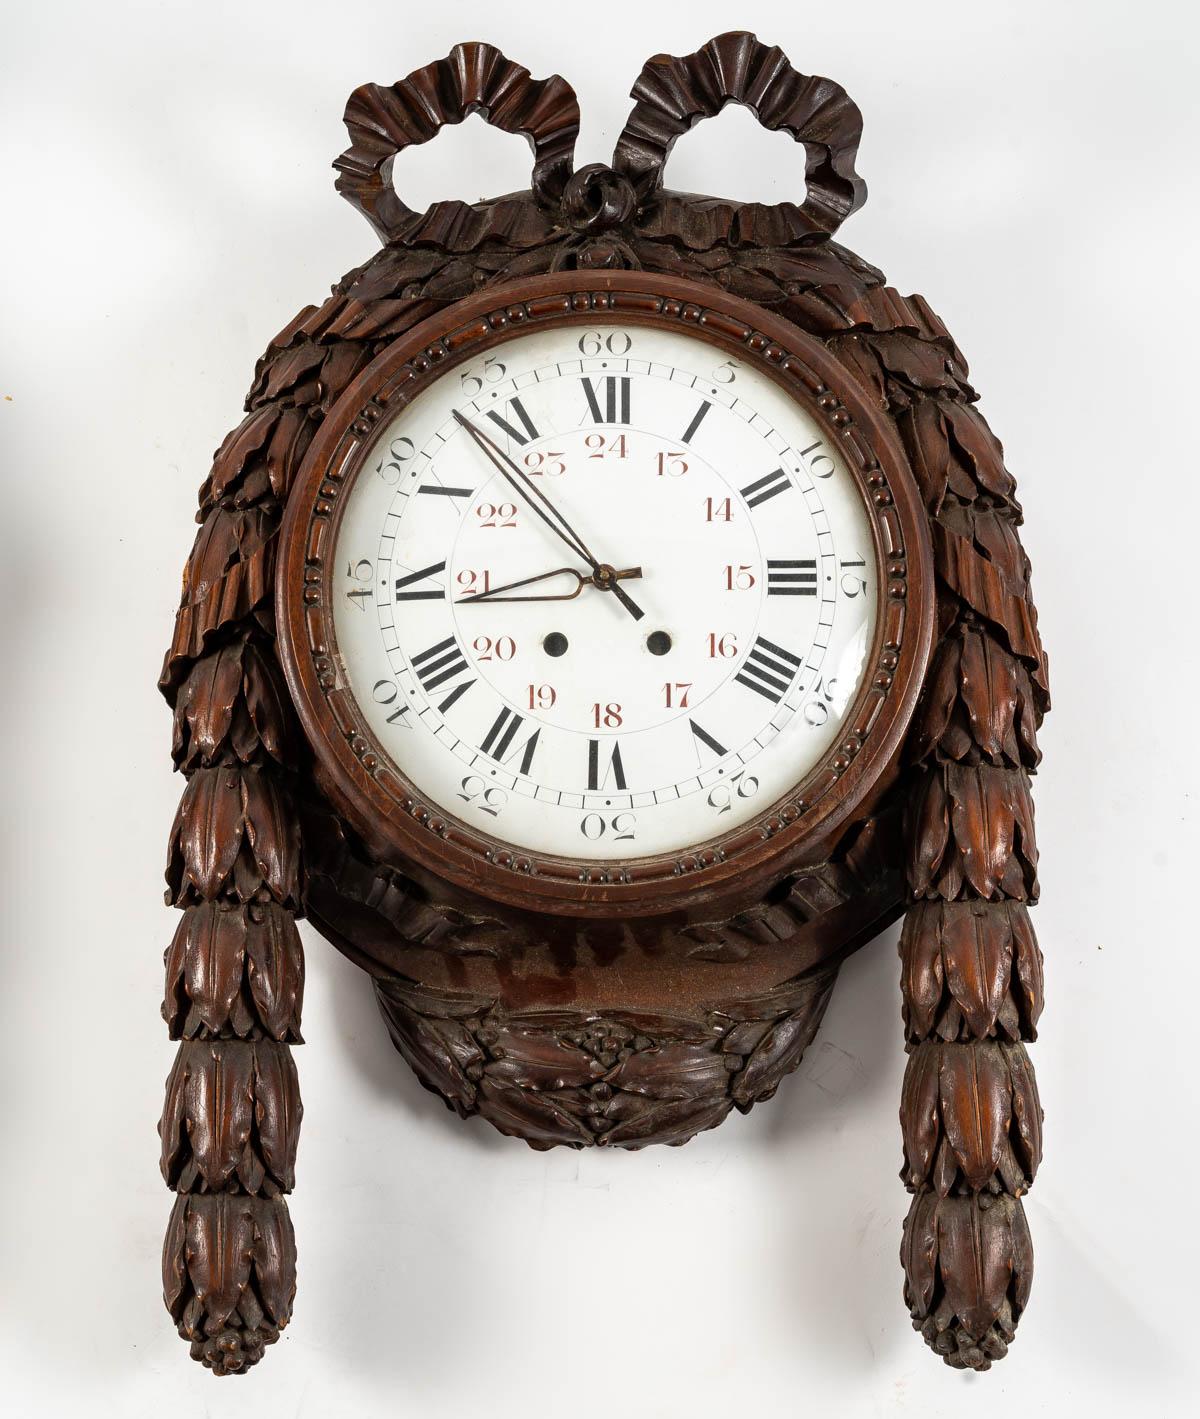 Set aus Barometer und Uhr, 19. Jahrhundert
Set aus einem Barometer und einer Uhr aus geschnitztem Holz, aus dem 19. Jahrhundert, Stil Louis XVI, Periode Napoleon III, tolle Dekoration.
Der Mechanismus der Uhr fehlt, aber es ist auf Anfrage